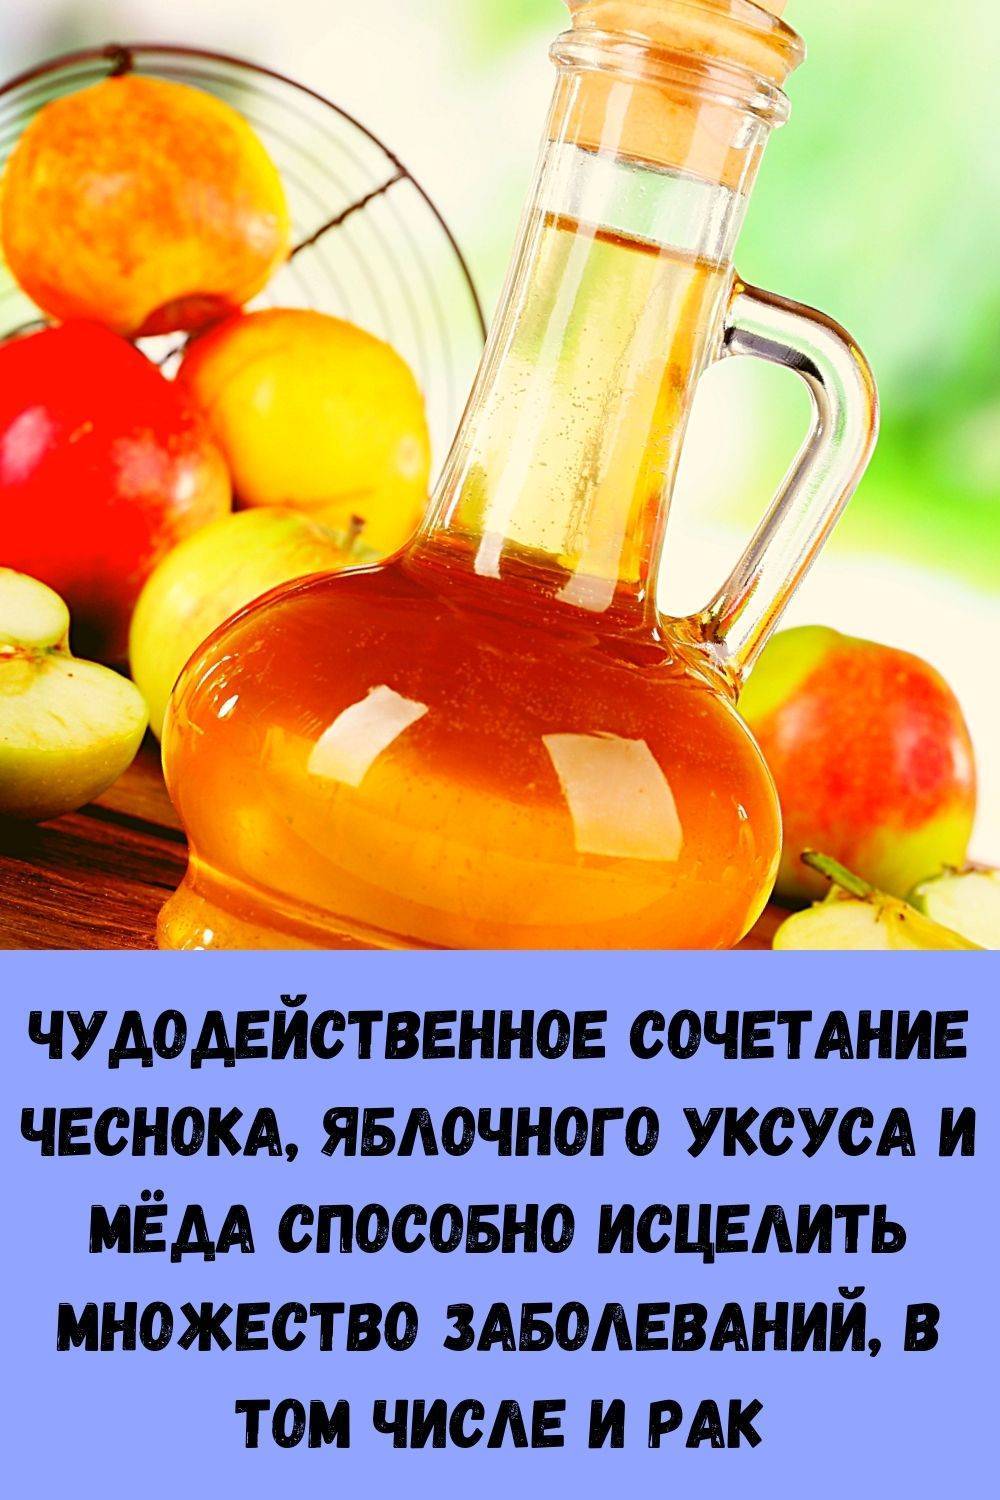 Яблочный уксус и мед для пользы организма: применяем правильно